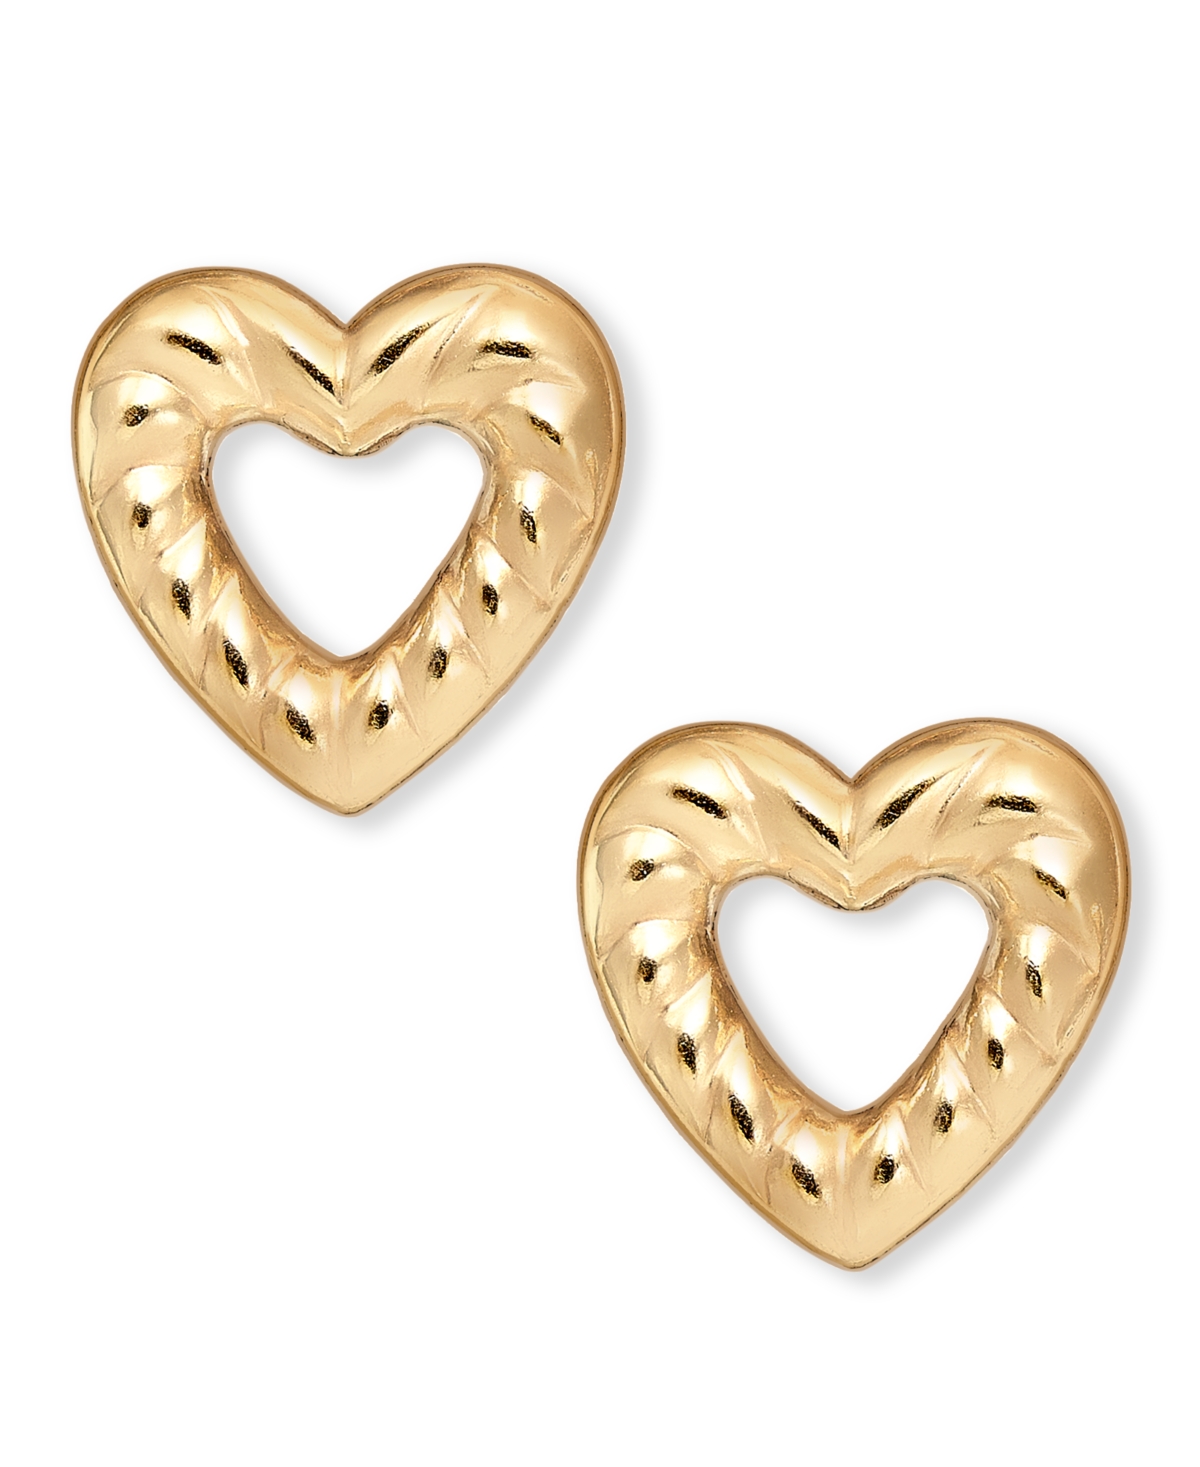 14k Gold-Plated Open Heart Stud Earrings - Gold